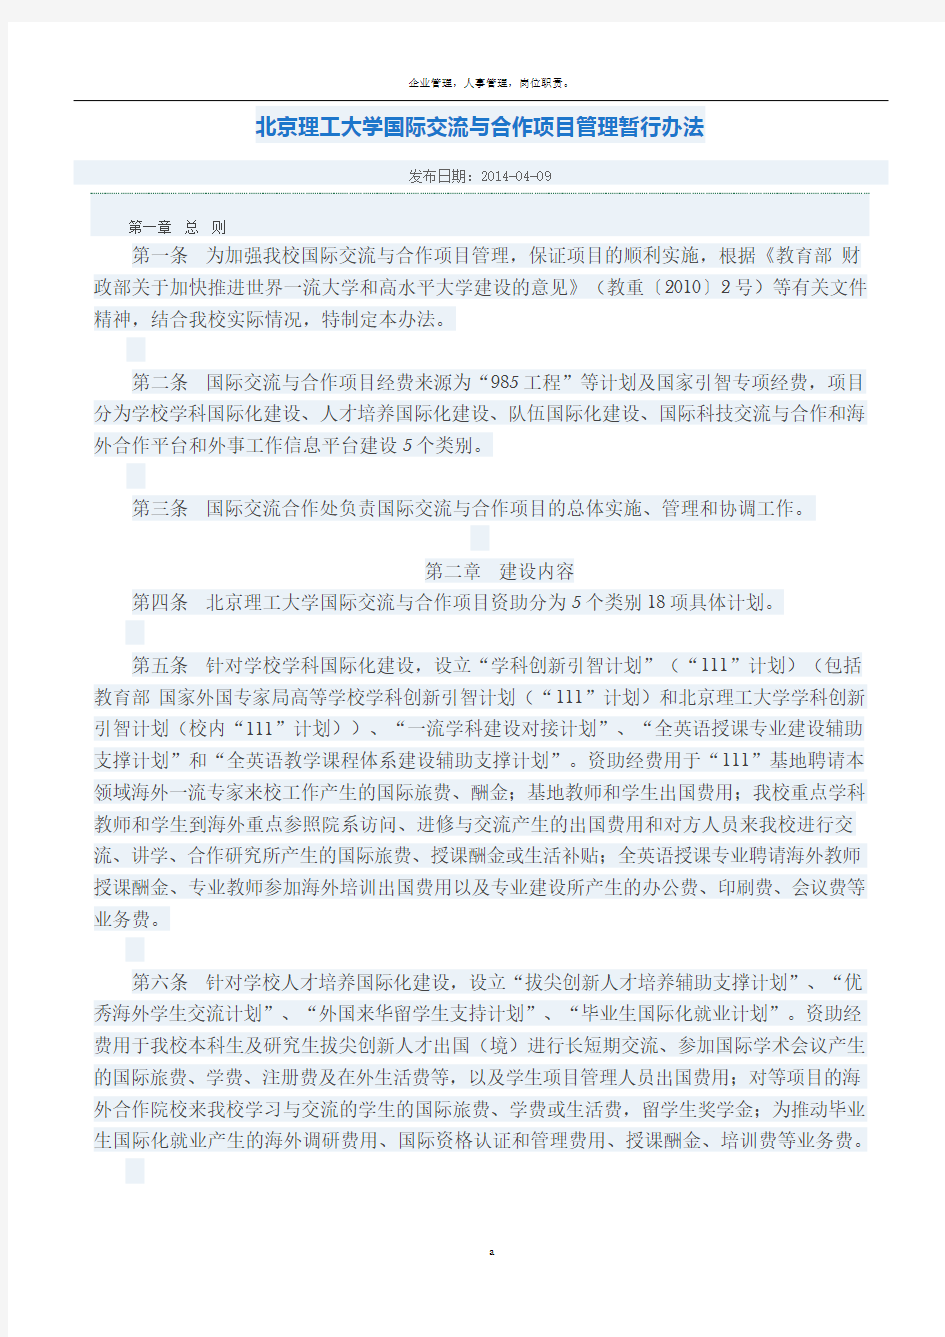 北京理工大学国际交流与合作项目管理暂行办法